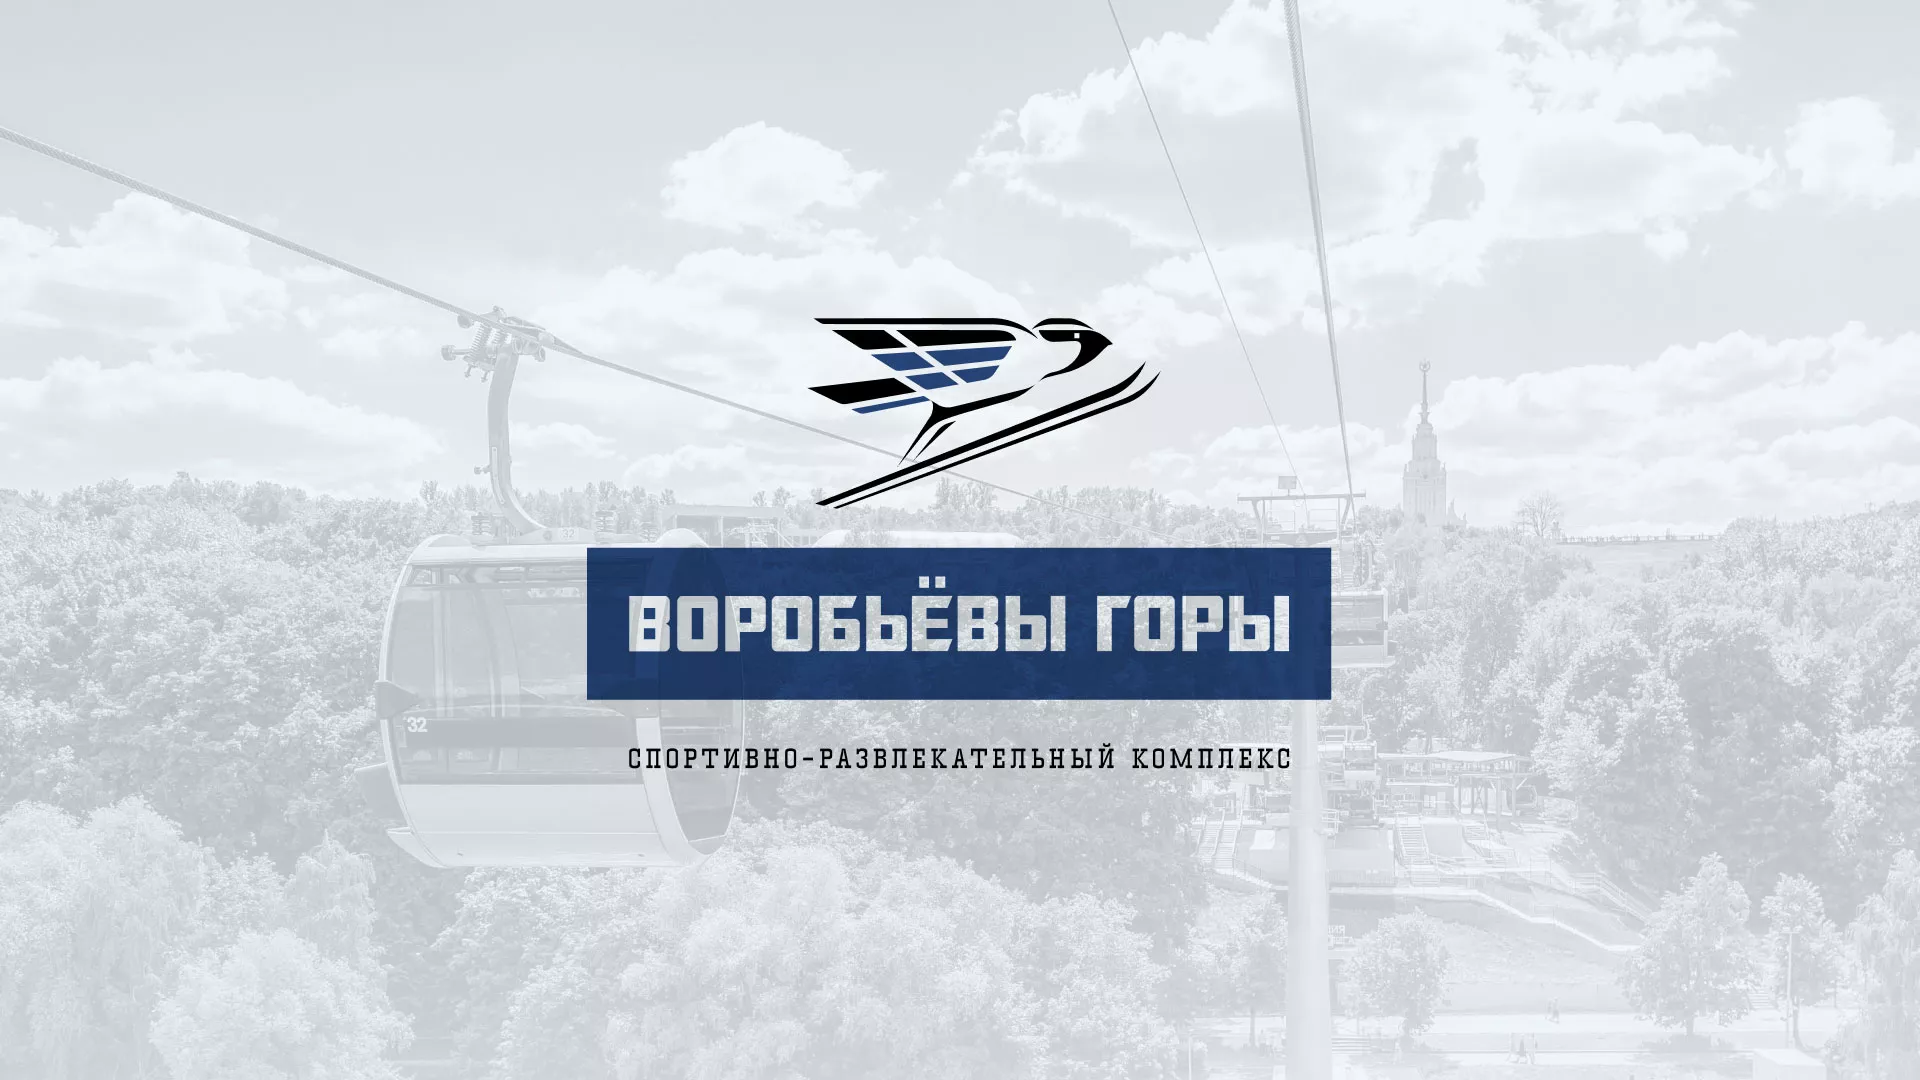 Разработка сайта в Городовиковске для спортивно-развлекательного комплекса «Воробьёвы горы»